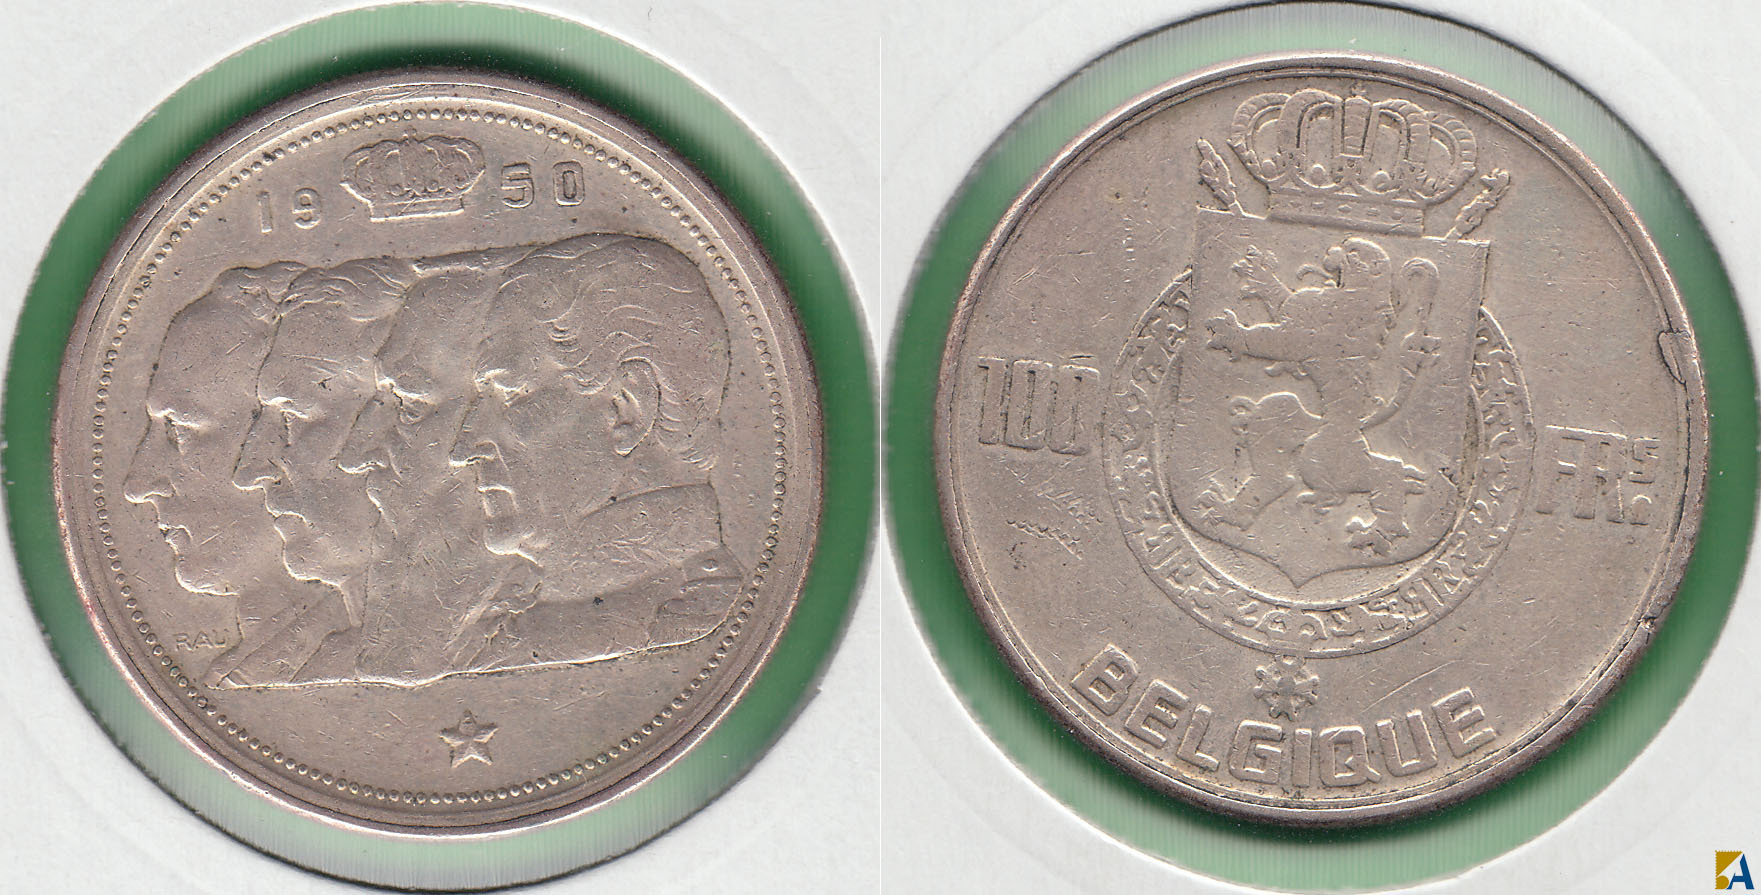 BELGICA - BELGIUM. 100 FRANCOS (FRANCS) DE 1950. PLATA 0.835.